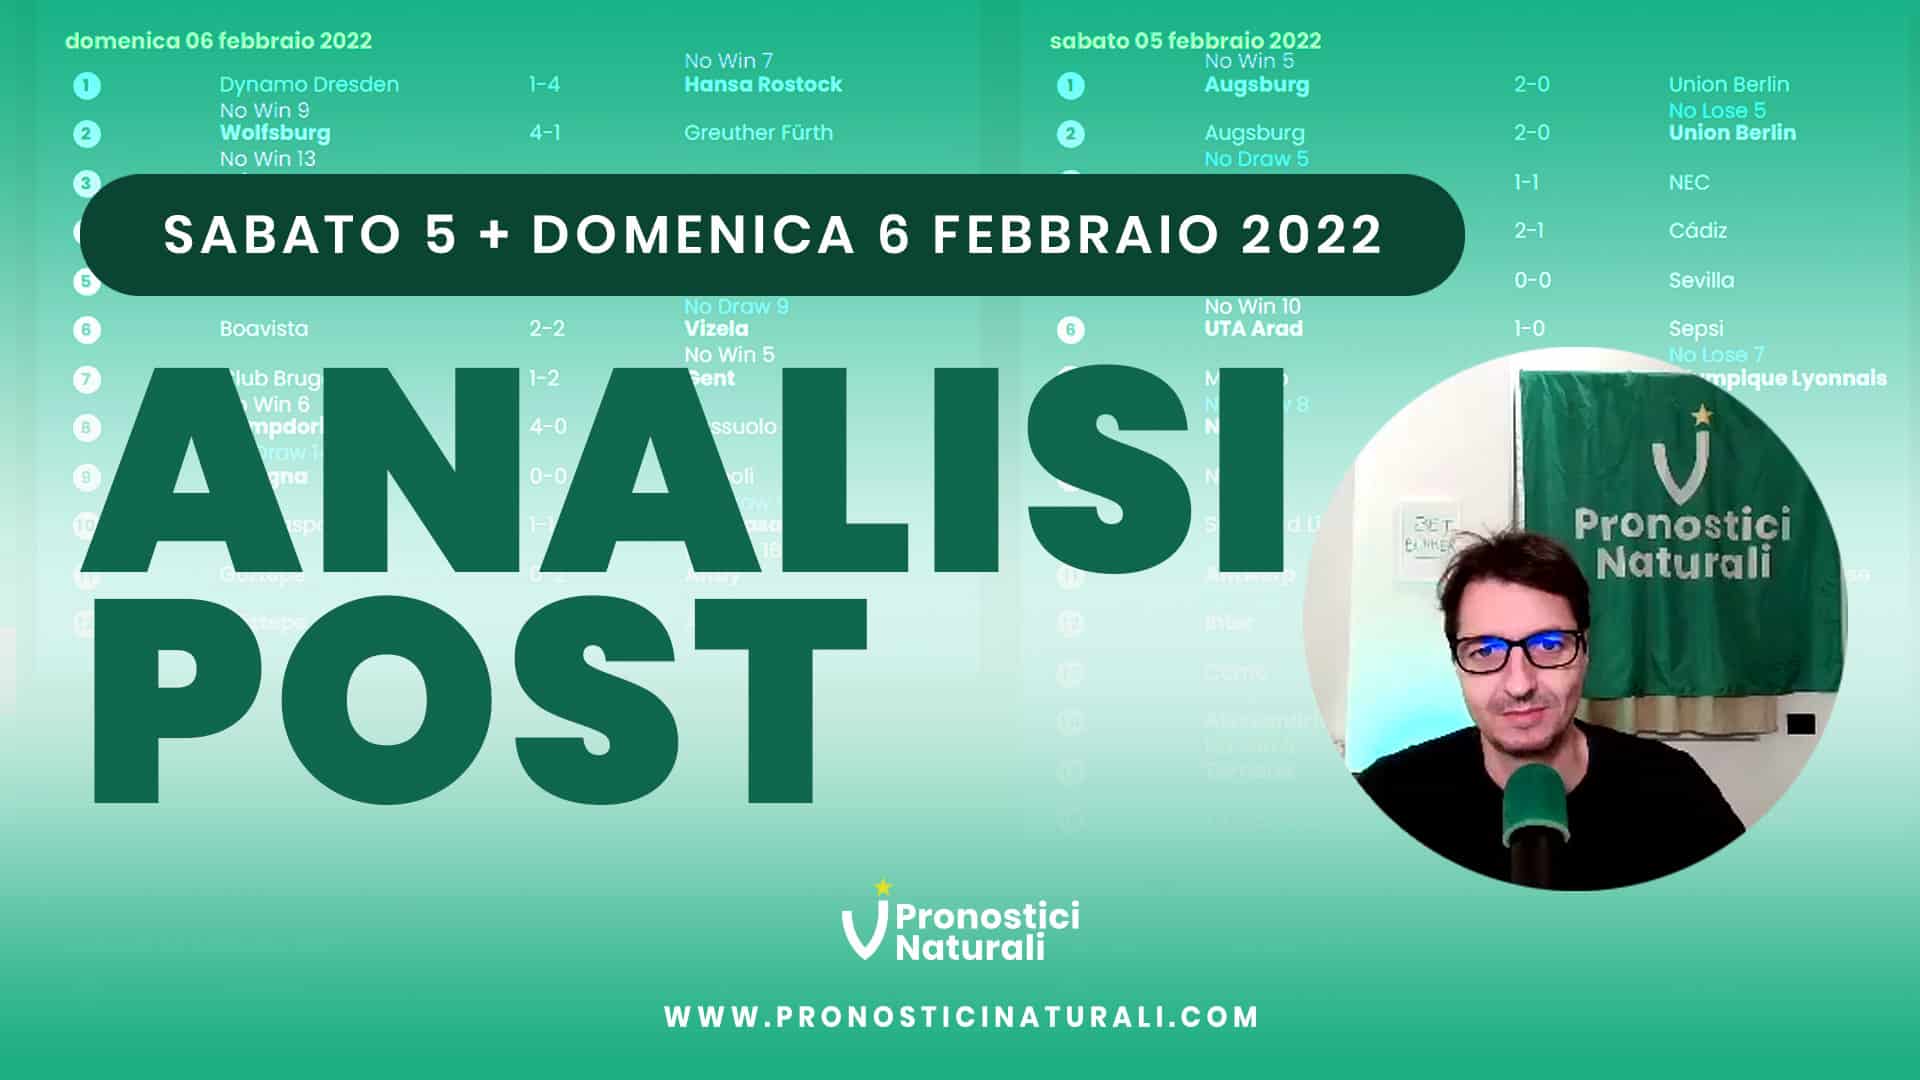 Pronostici Naturali Video Analisi Scommesse Betting Calcio Analisi Post Partite Sabato 5 Domenica 6 Febbraio 2022